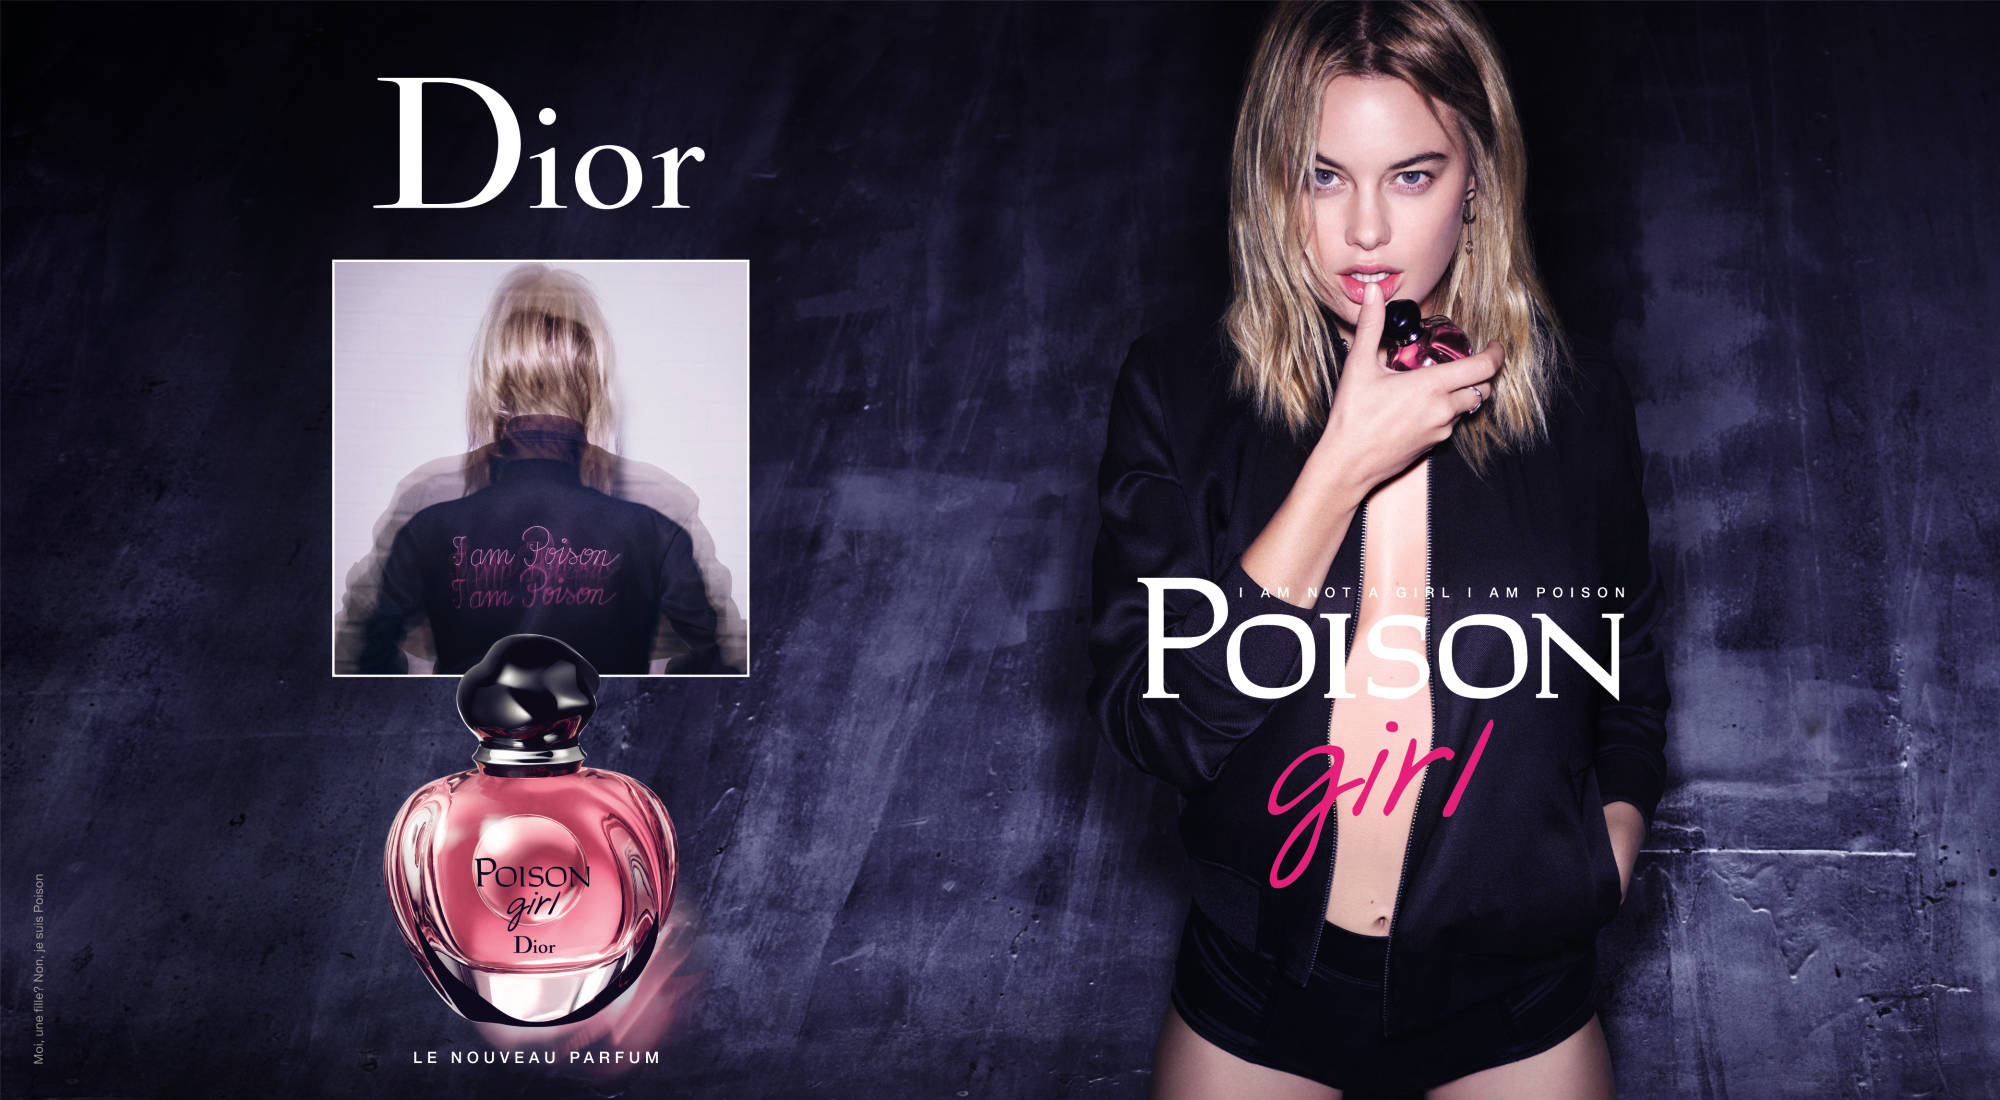 reklam afiş manken önden ve arkadan resim ad-dior-poison-girl-perfume.jpg